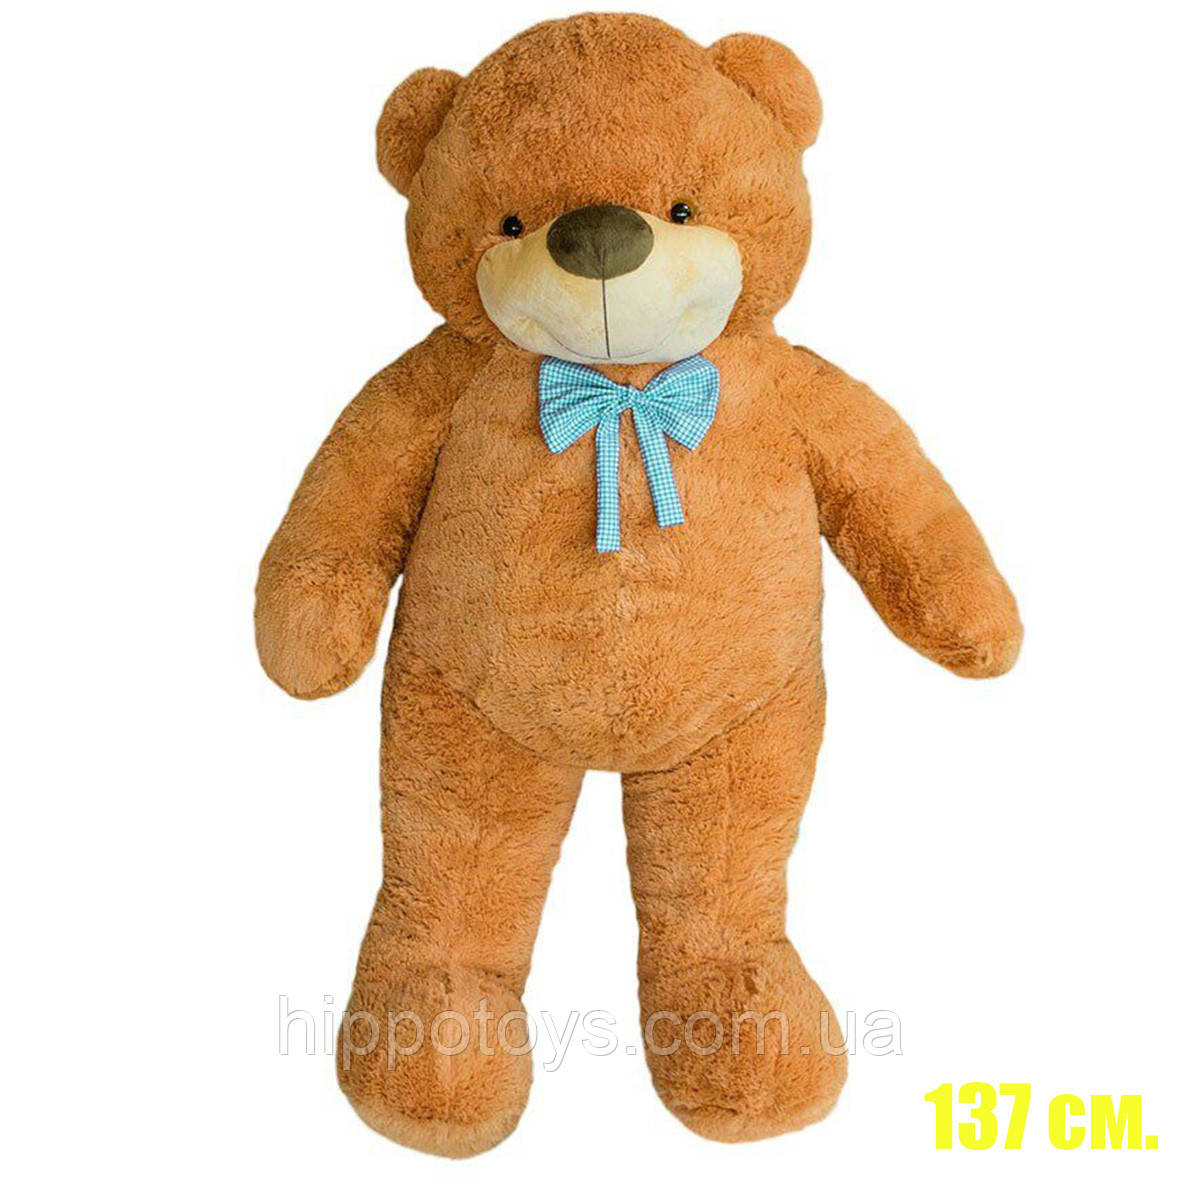 Велике плюшеве ведмежа М'яка іграшка Ведмідь Великий коричневий 137 см Плюшевий ведмедик на подарунок 5641